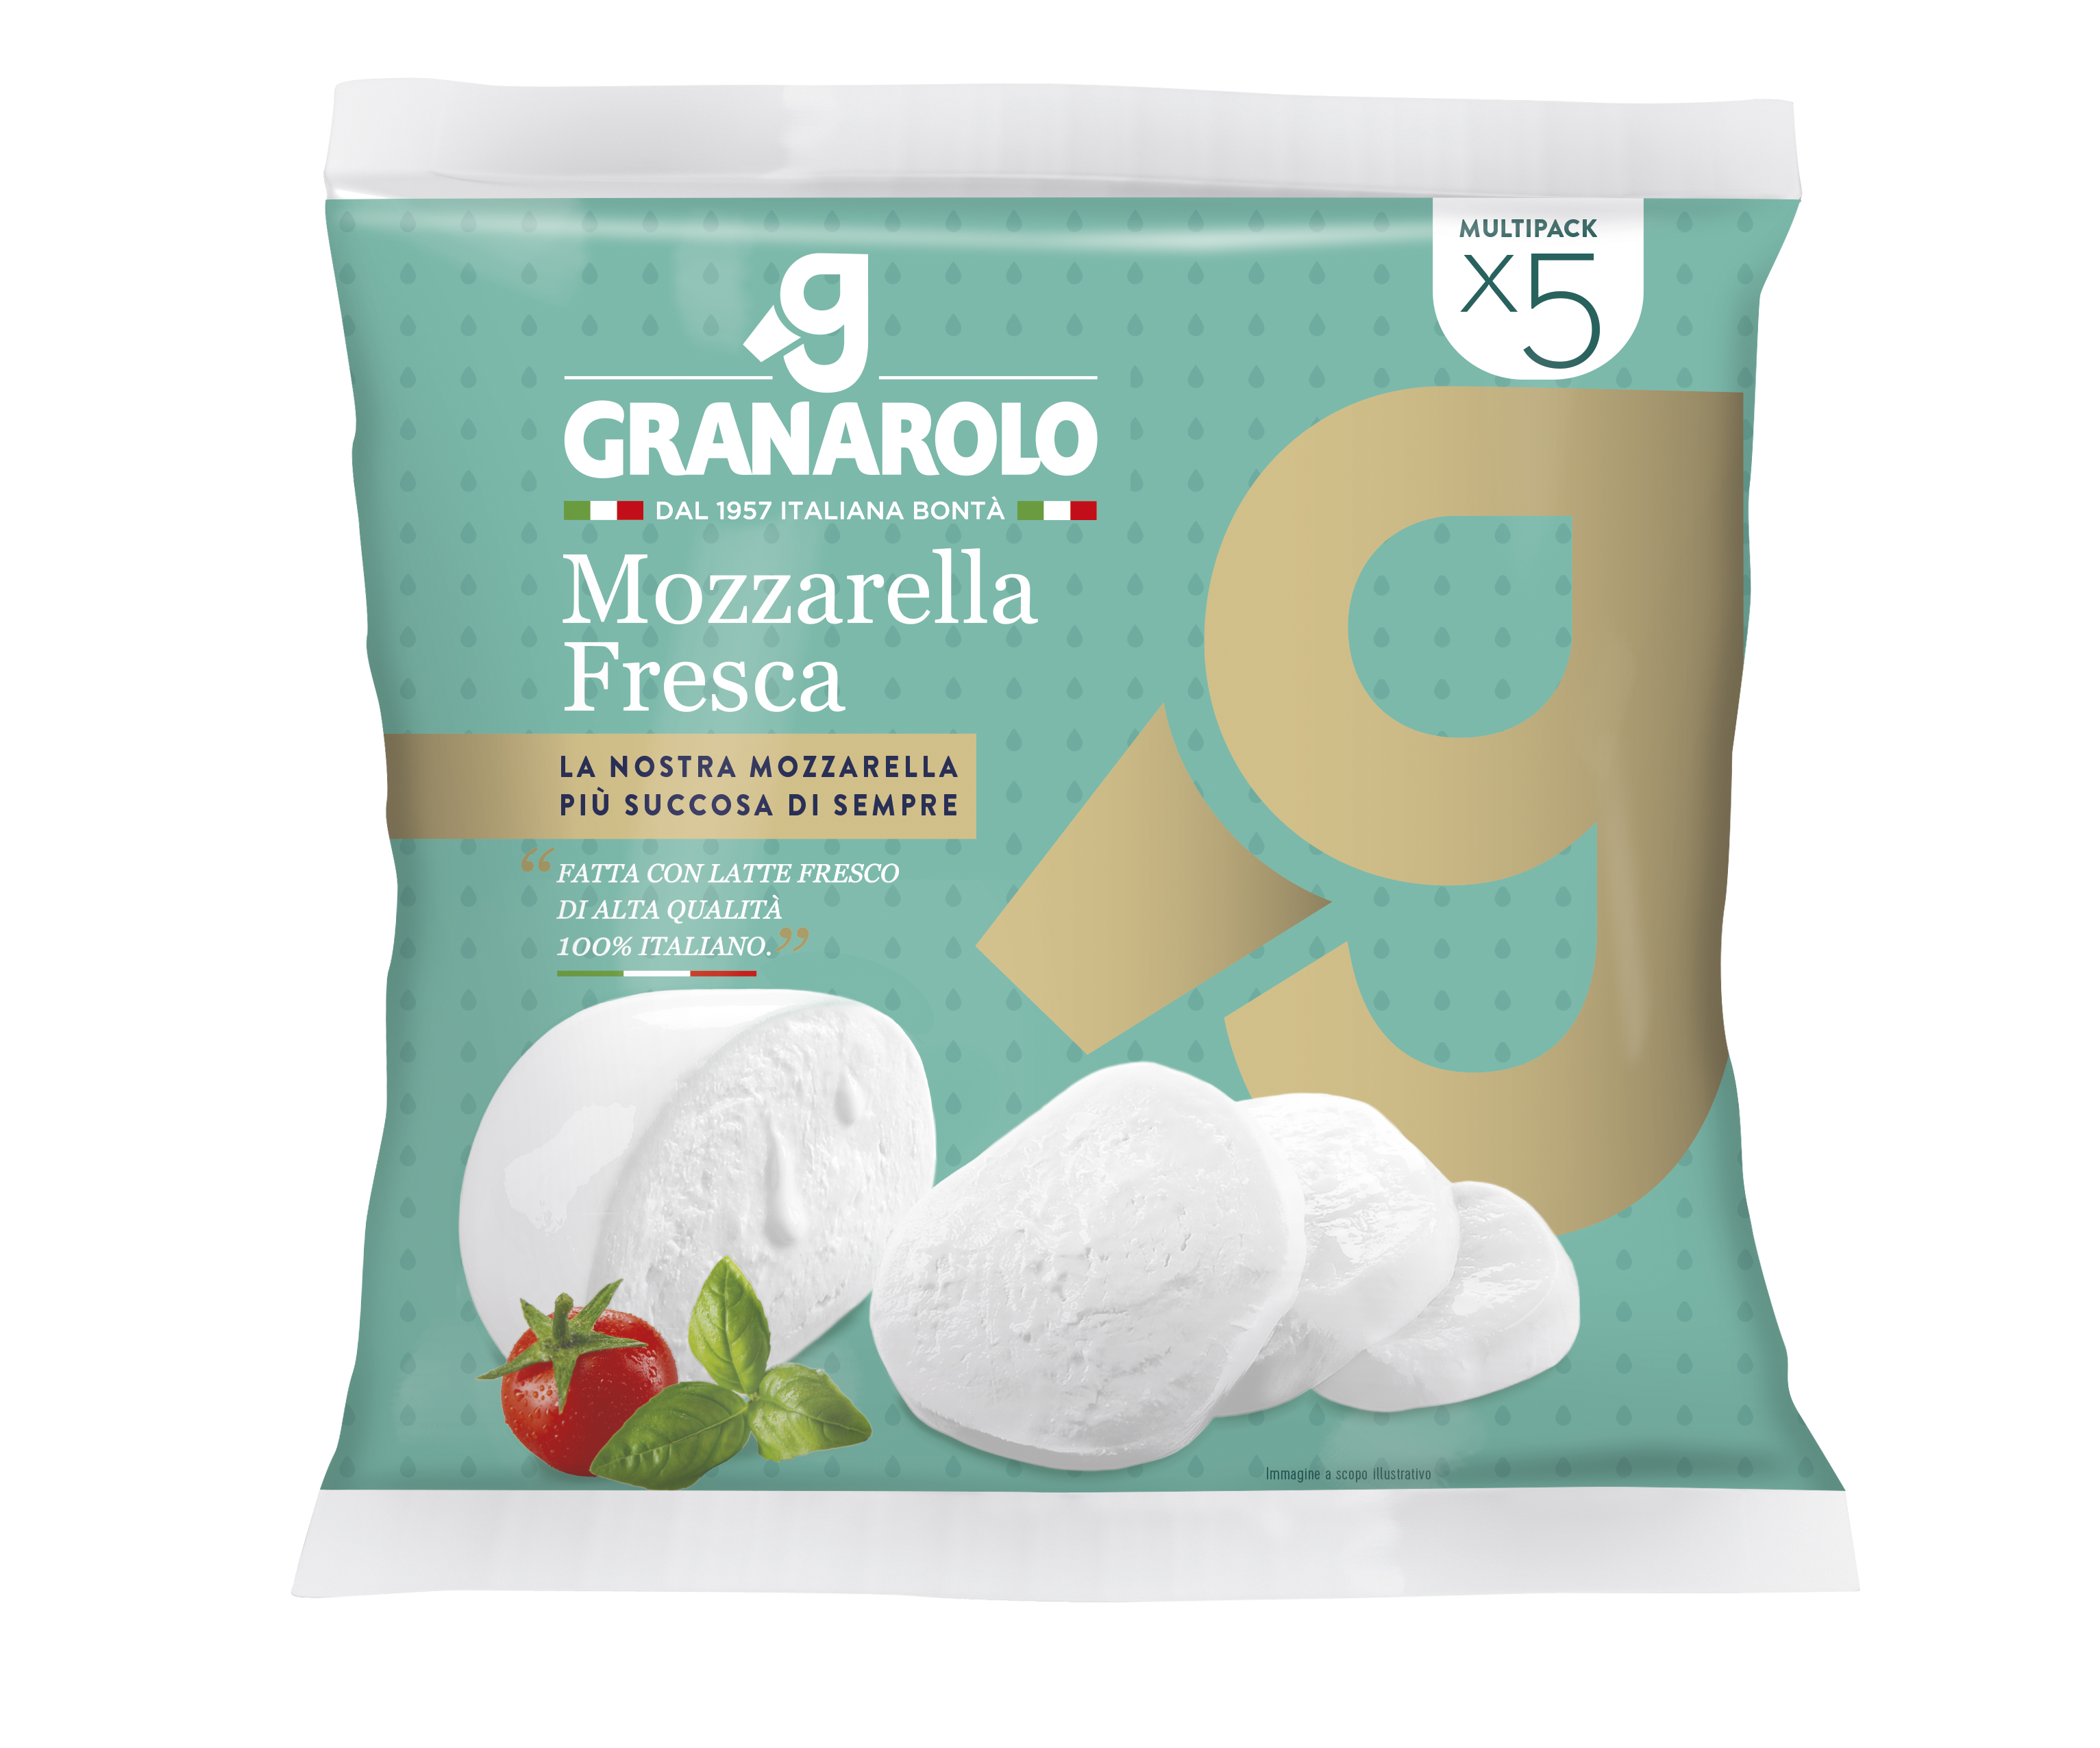 Granarolo quality S-P-00128 fresh from Mozzarella milk - high made